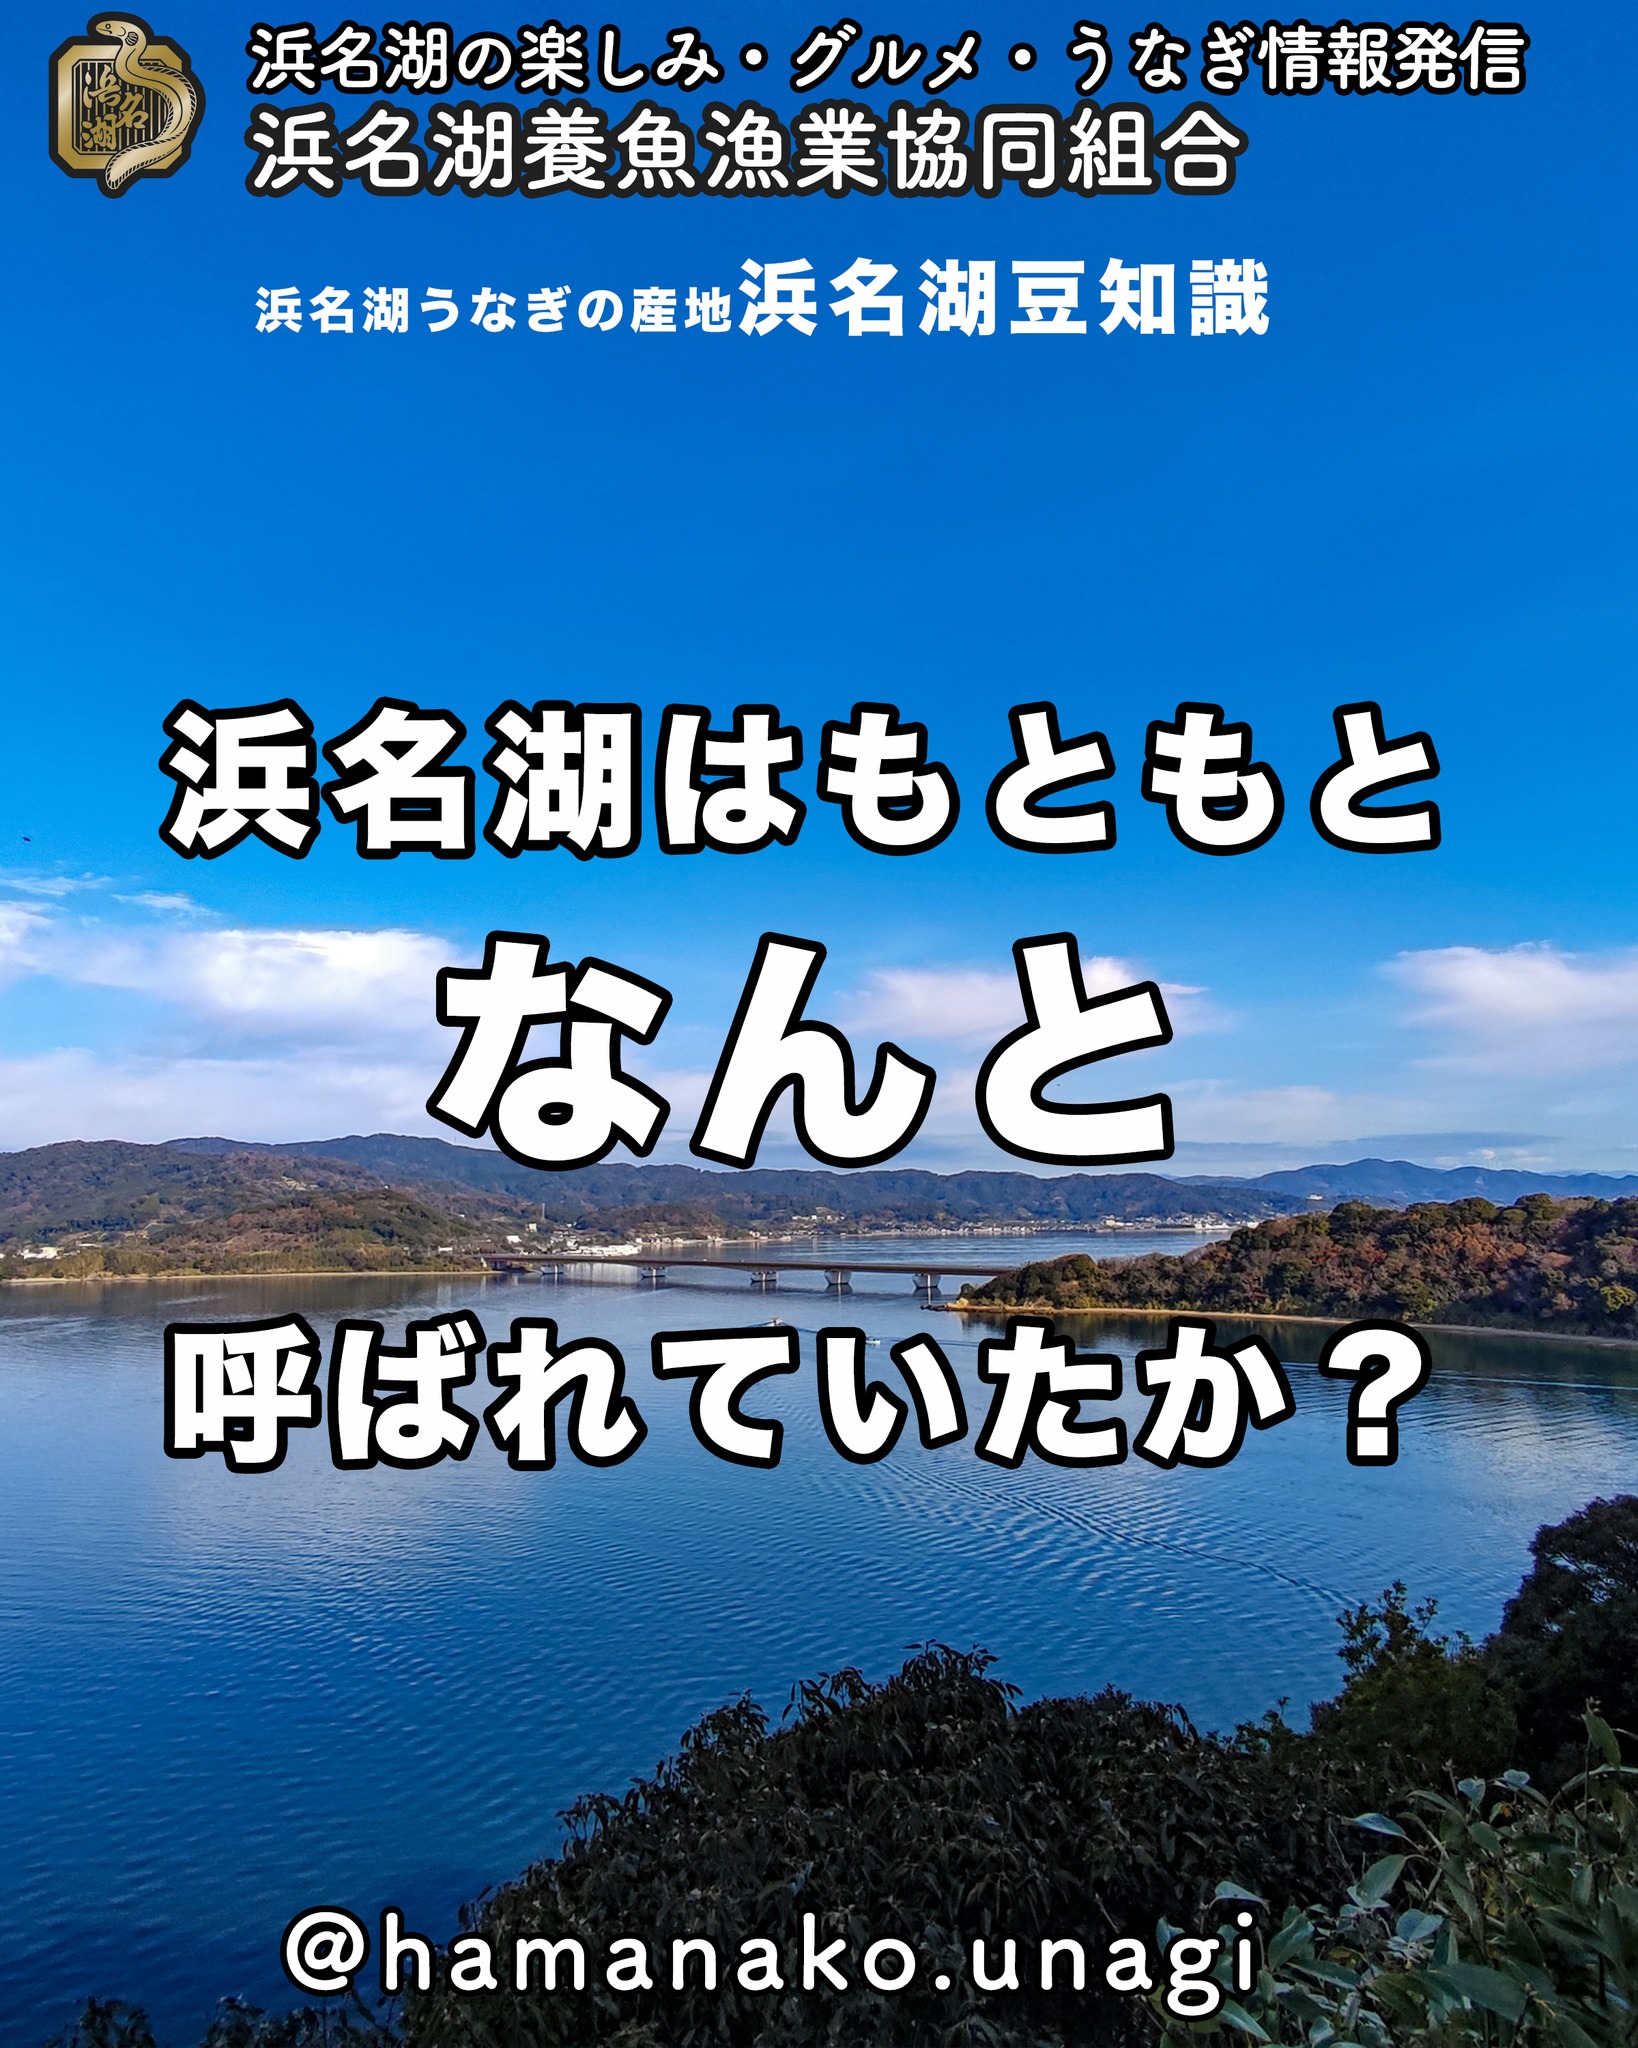 ★浜名湖豆知識クイズ！

浜名湖はもともと
浜名湖とは呼ばれていませんでした。

さてさて

なんて呼ばれていたでしょうか？

かなりマニアックだと思うよ

答えは・・・

『遠っ淡海』（とおっおうみ）と
呼ばれていたそうですよ

昔は京都が日本の中心だったから
京都の近くにある琵琶湖を

『近っ淡海』（ちかっあふみ）

と呼び、遠くにある湖である浜名湖を

『遠っ淡海』

と、読んでいたそうです。

で、

だんだんと『浜名のうみ』となり
※急に変わるのが面白いね🤗
『浜名湖』という名称が定着したんだって。

おもしろいね〜

~~~~~~~~~~~~~~~⛩️~~~~
浜名湖を中心に、グルメ、文化
お店など浜名湖の観光情報を
みなさまにお届けしています。

参考になったら、
面白いなぁと感じたら

いいね！&フォローを
お願いいたします。

浜名湖養魚漁業組合
@hamanako.unagi

〜〜〜〜〜〜〜〜〜〜〜〜〜

#浜名湖養魚漁業組合
#浜名湖観光
#浜松観光 
#浜名湖豆知識
#浜名湖の歴史